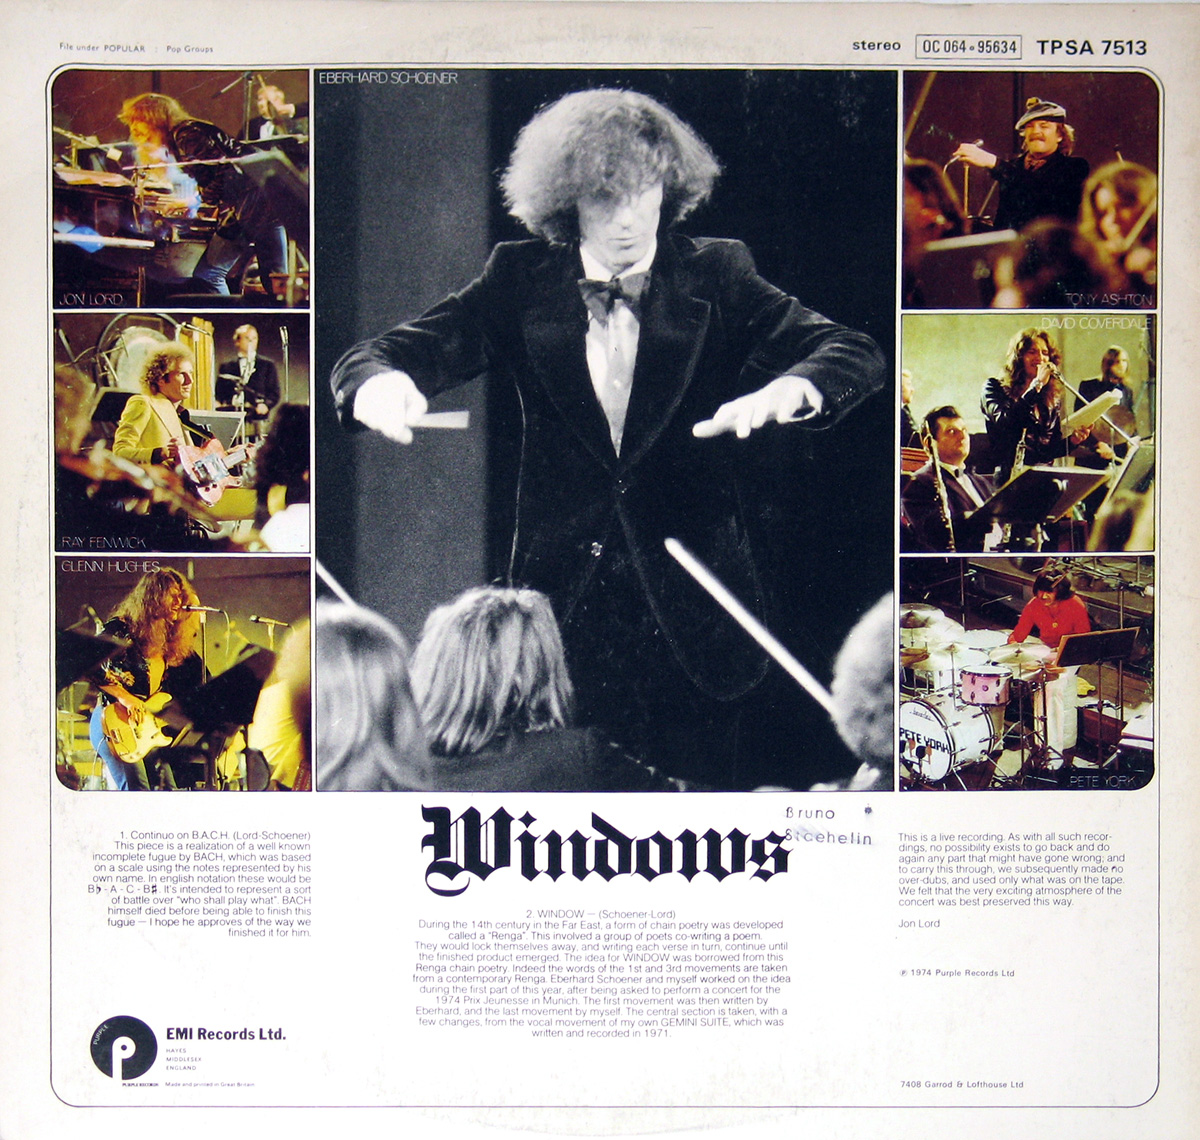 Jon Lord Windows Continuo on Bach 12" Vinyl LP